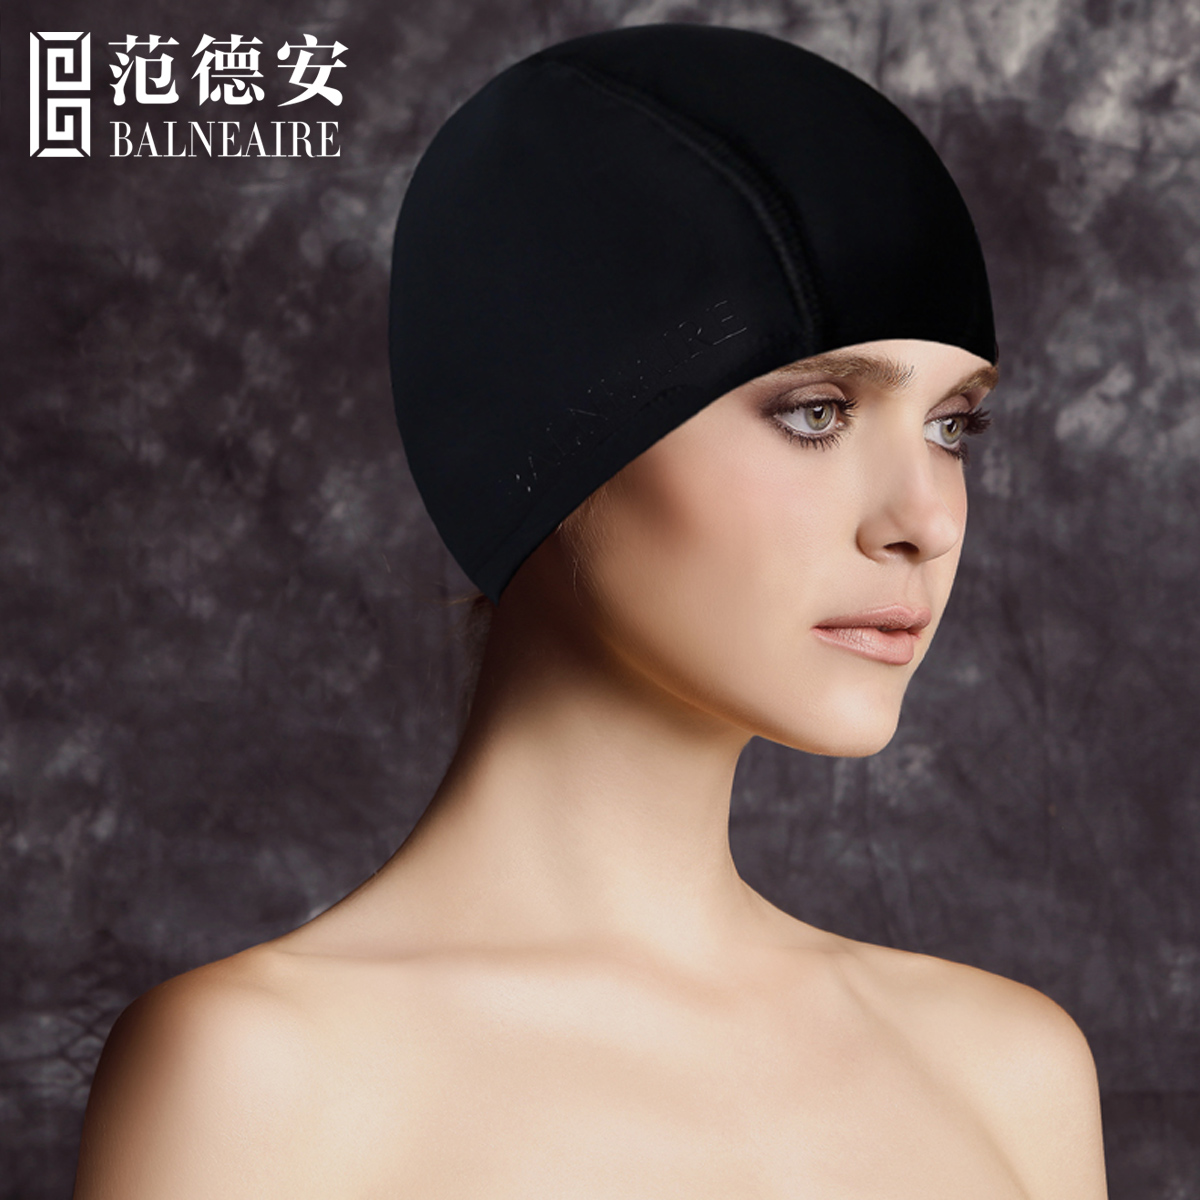 范德安泳帽女 黑色长发不勒头时尚舒适大号沙滩防晒游泳装备用品产品展示图3